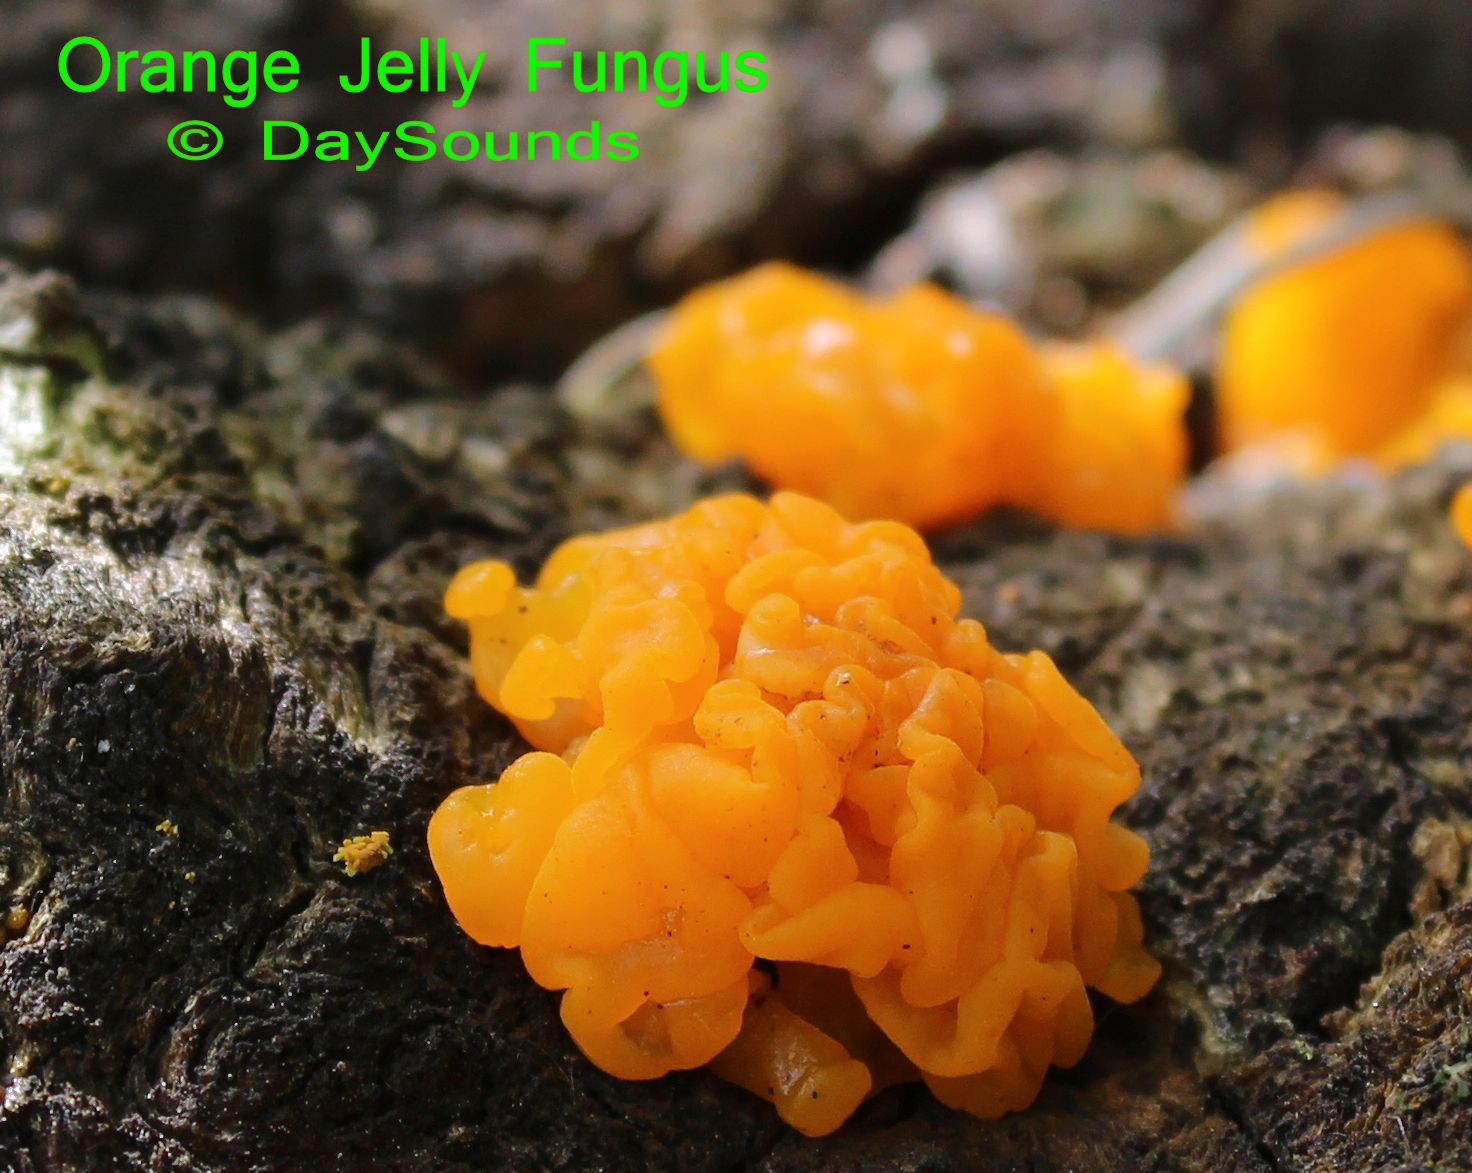 Jelly Fungus, Orange